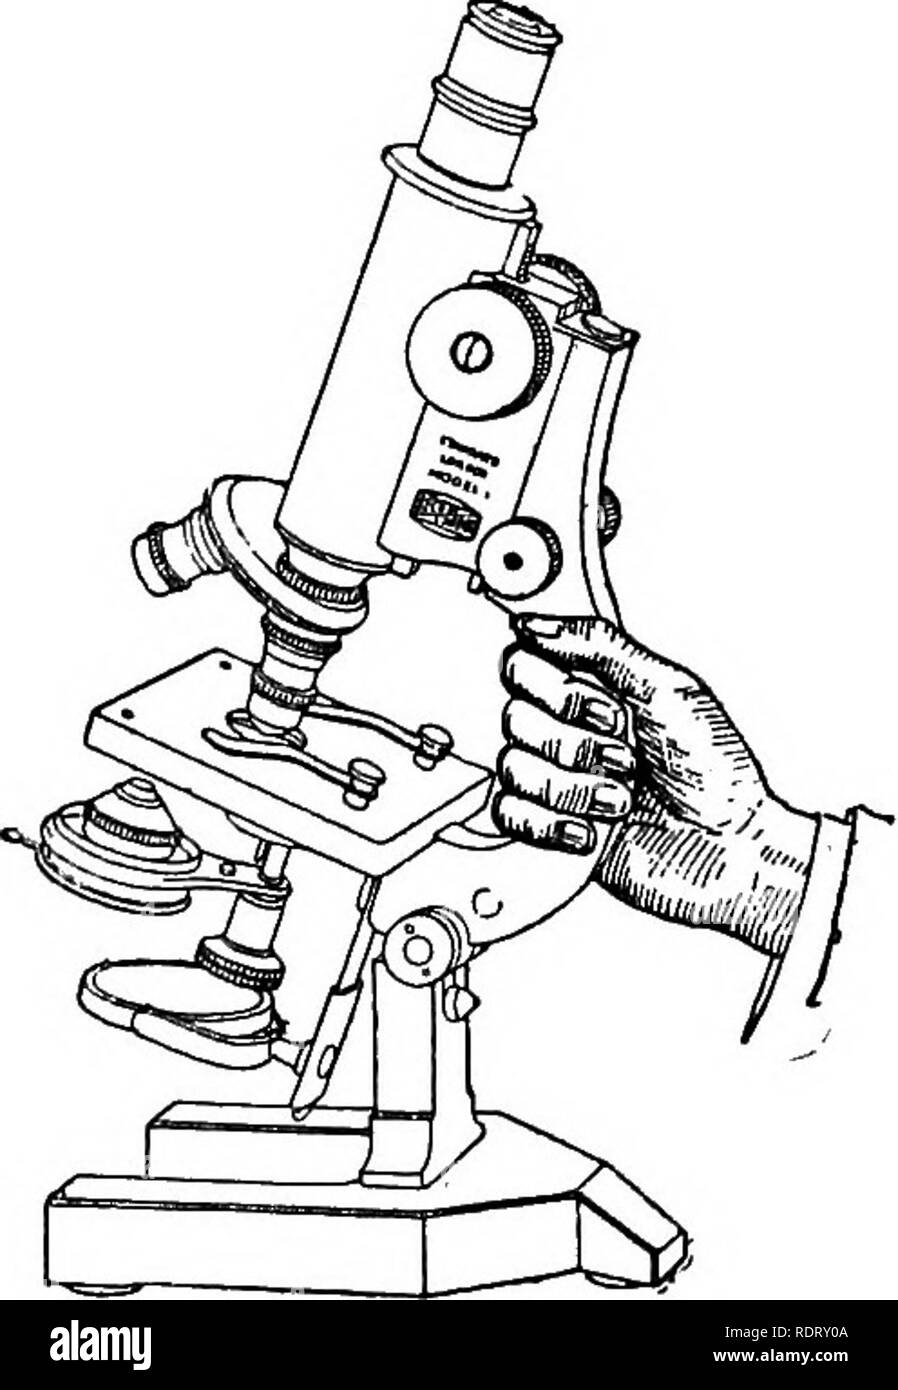 El microscopio; un manual sencillo. Microscopios. 94 El microscopio común.  Umb. y mttst trabaja con un movimiento suave y uniforme que permite el  ajuste más delicado para el foco. El ajuste